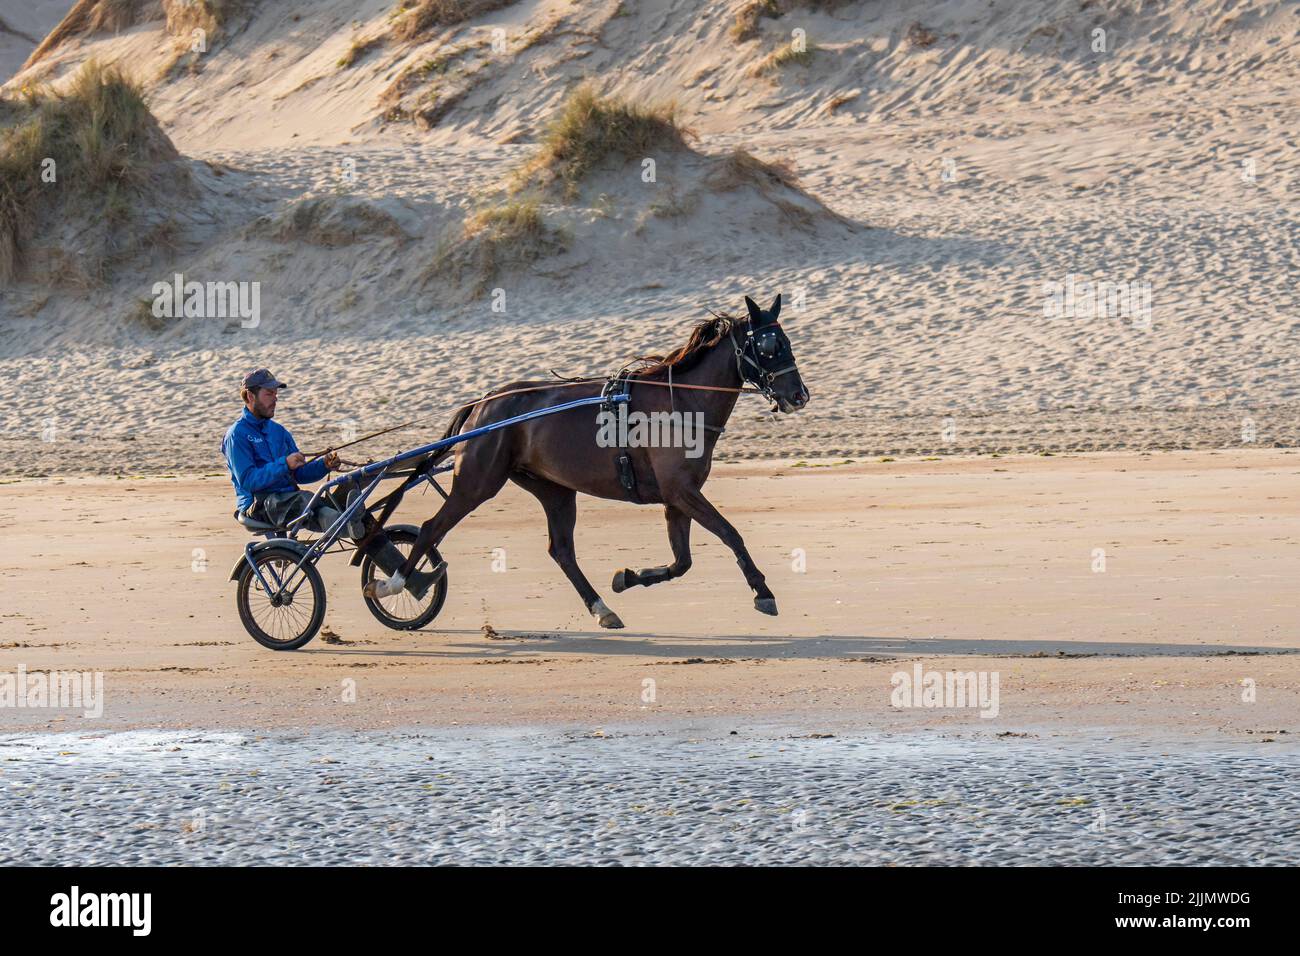 Trabergurt mit Rennpferd am Strand, zeigt Fahrer, der auf einem zweirädrigen Wagen mit Namen Sulky reitet Stockfoto